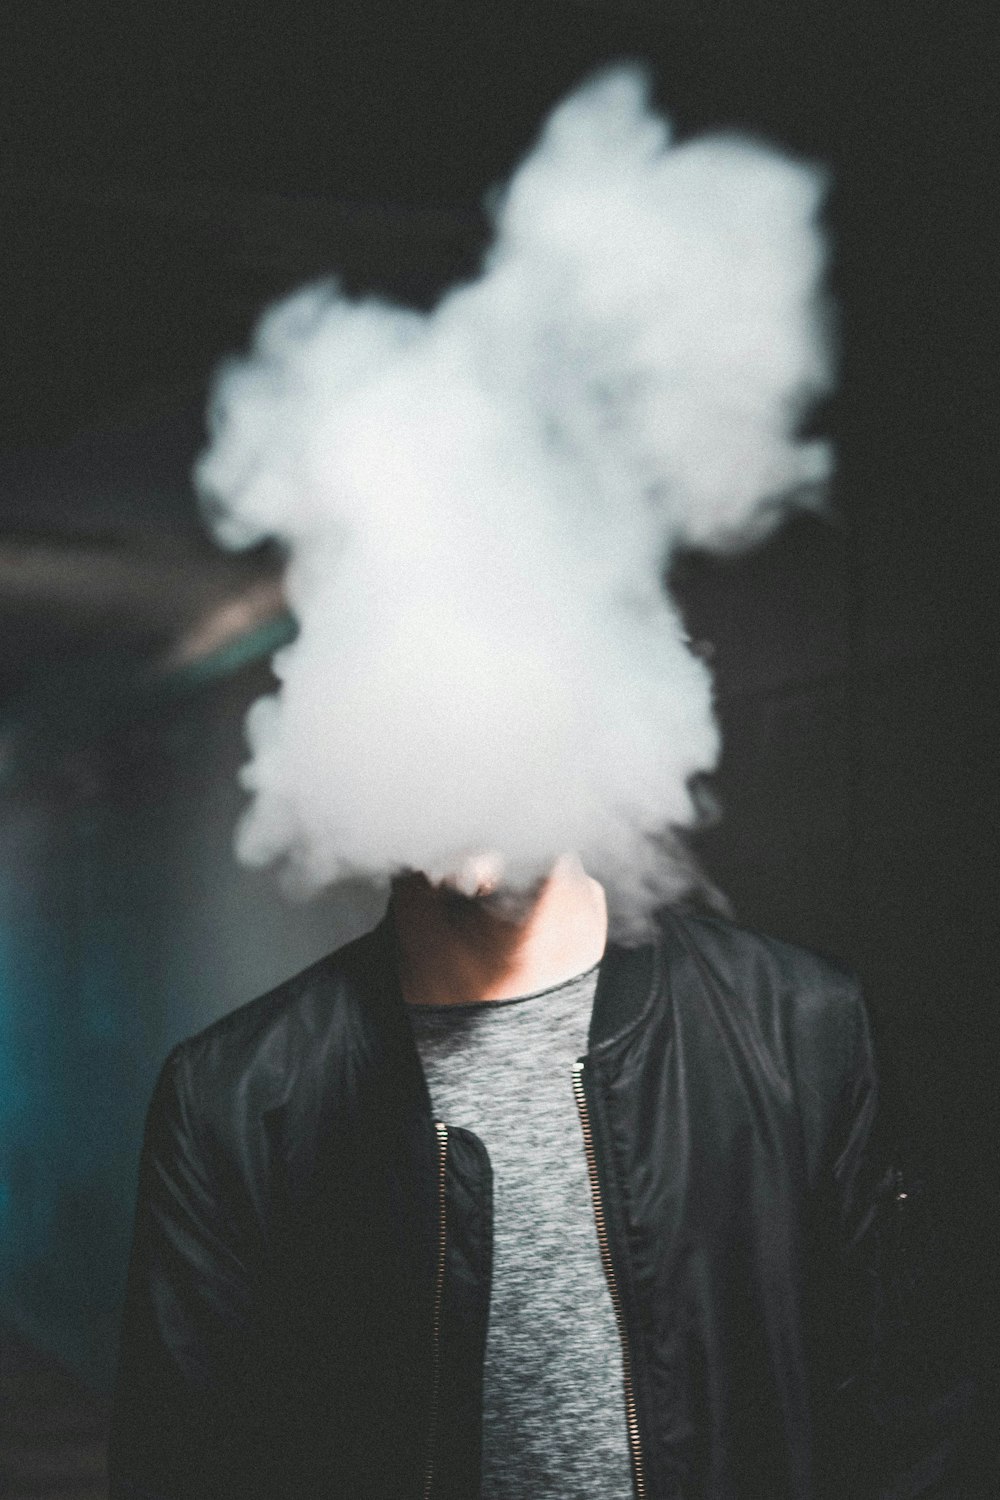 man wearing black leather zip-up jacket while blowing smoke